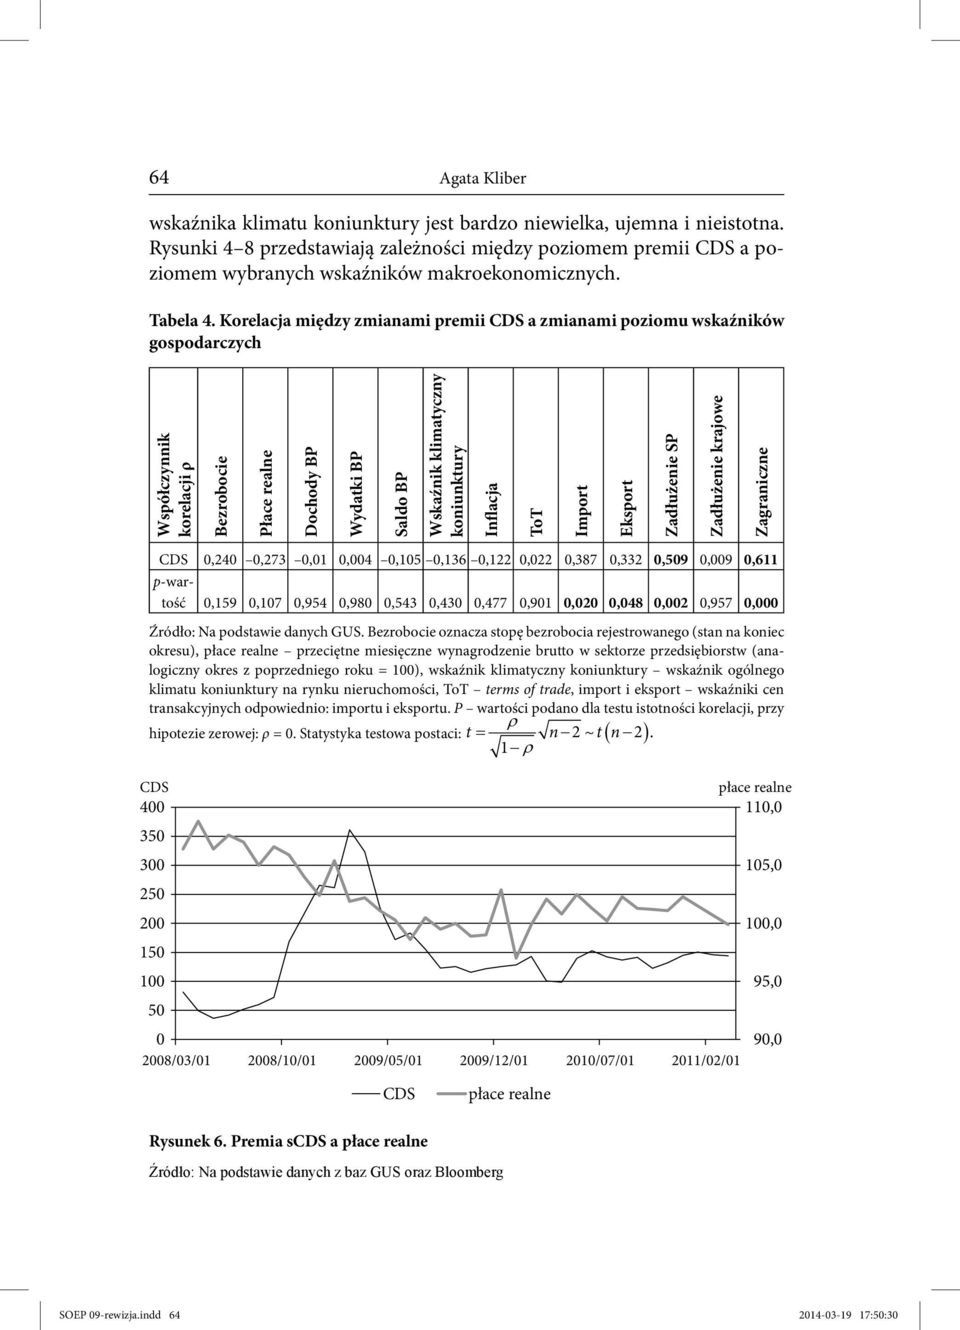 Korelacja między zmianami premii CDS a zmianami poziomu wskaźników gospodarczych Współczynnik korelacji ρ Bezrobocie Płace realne Dochody BP Wydatki BP Saldo BP Wskaźnik klimatyczny koniunktury